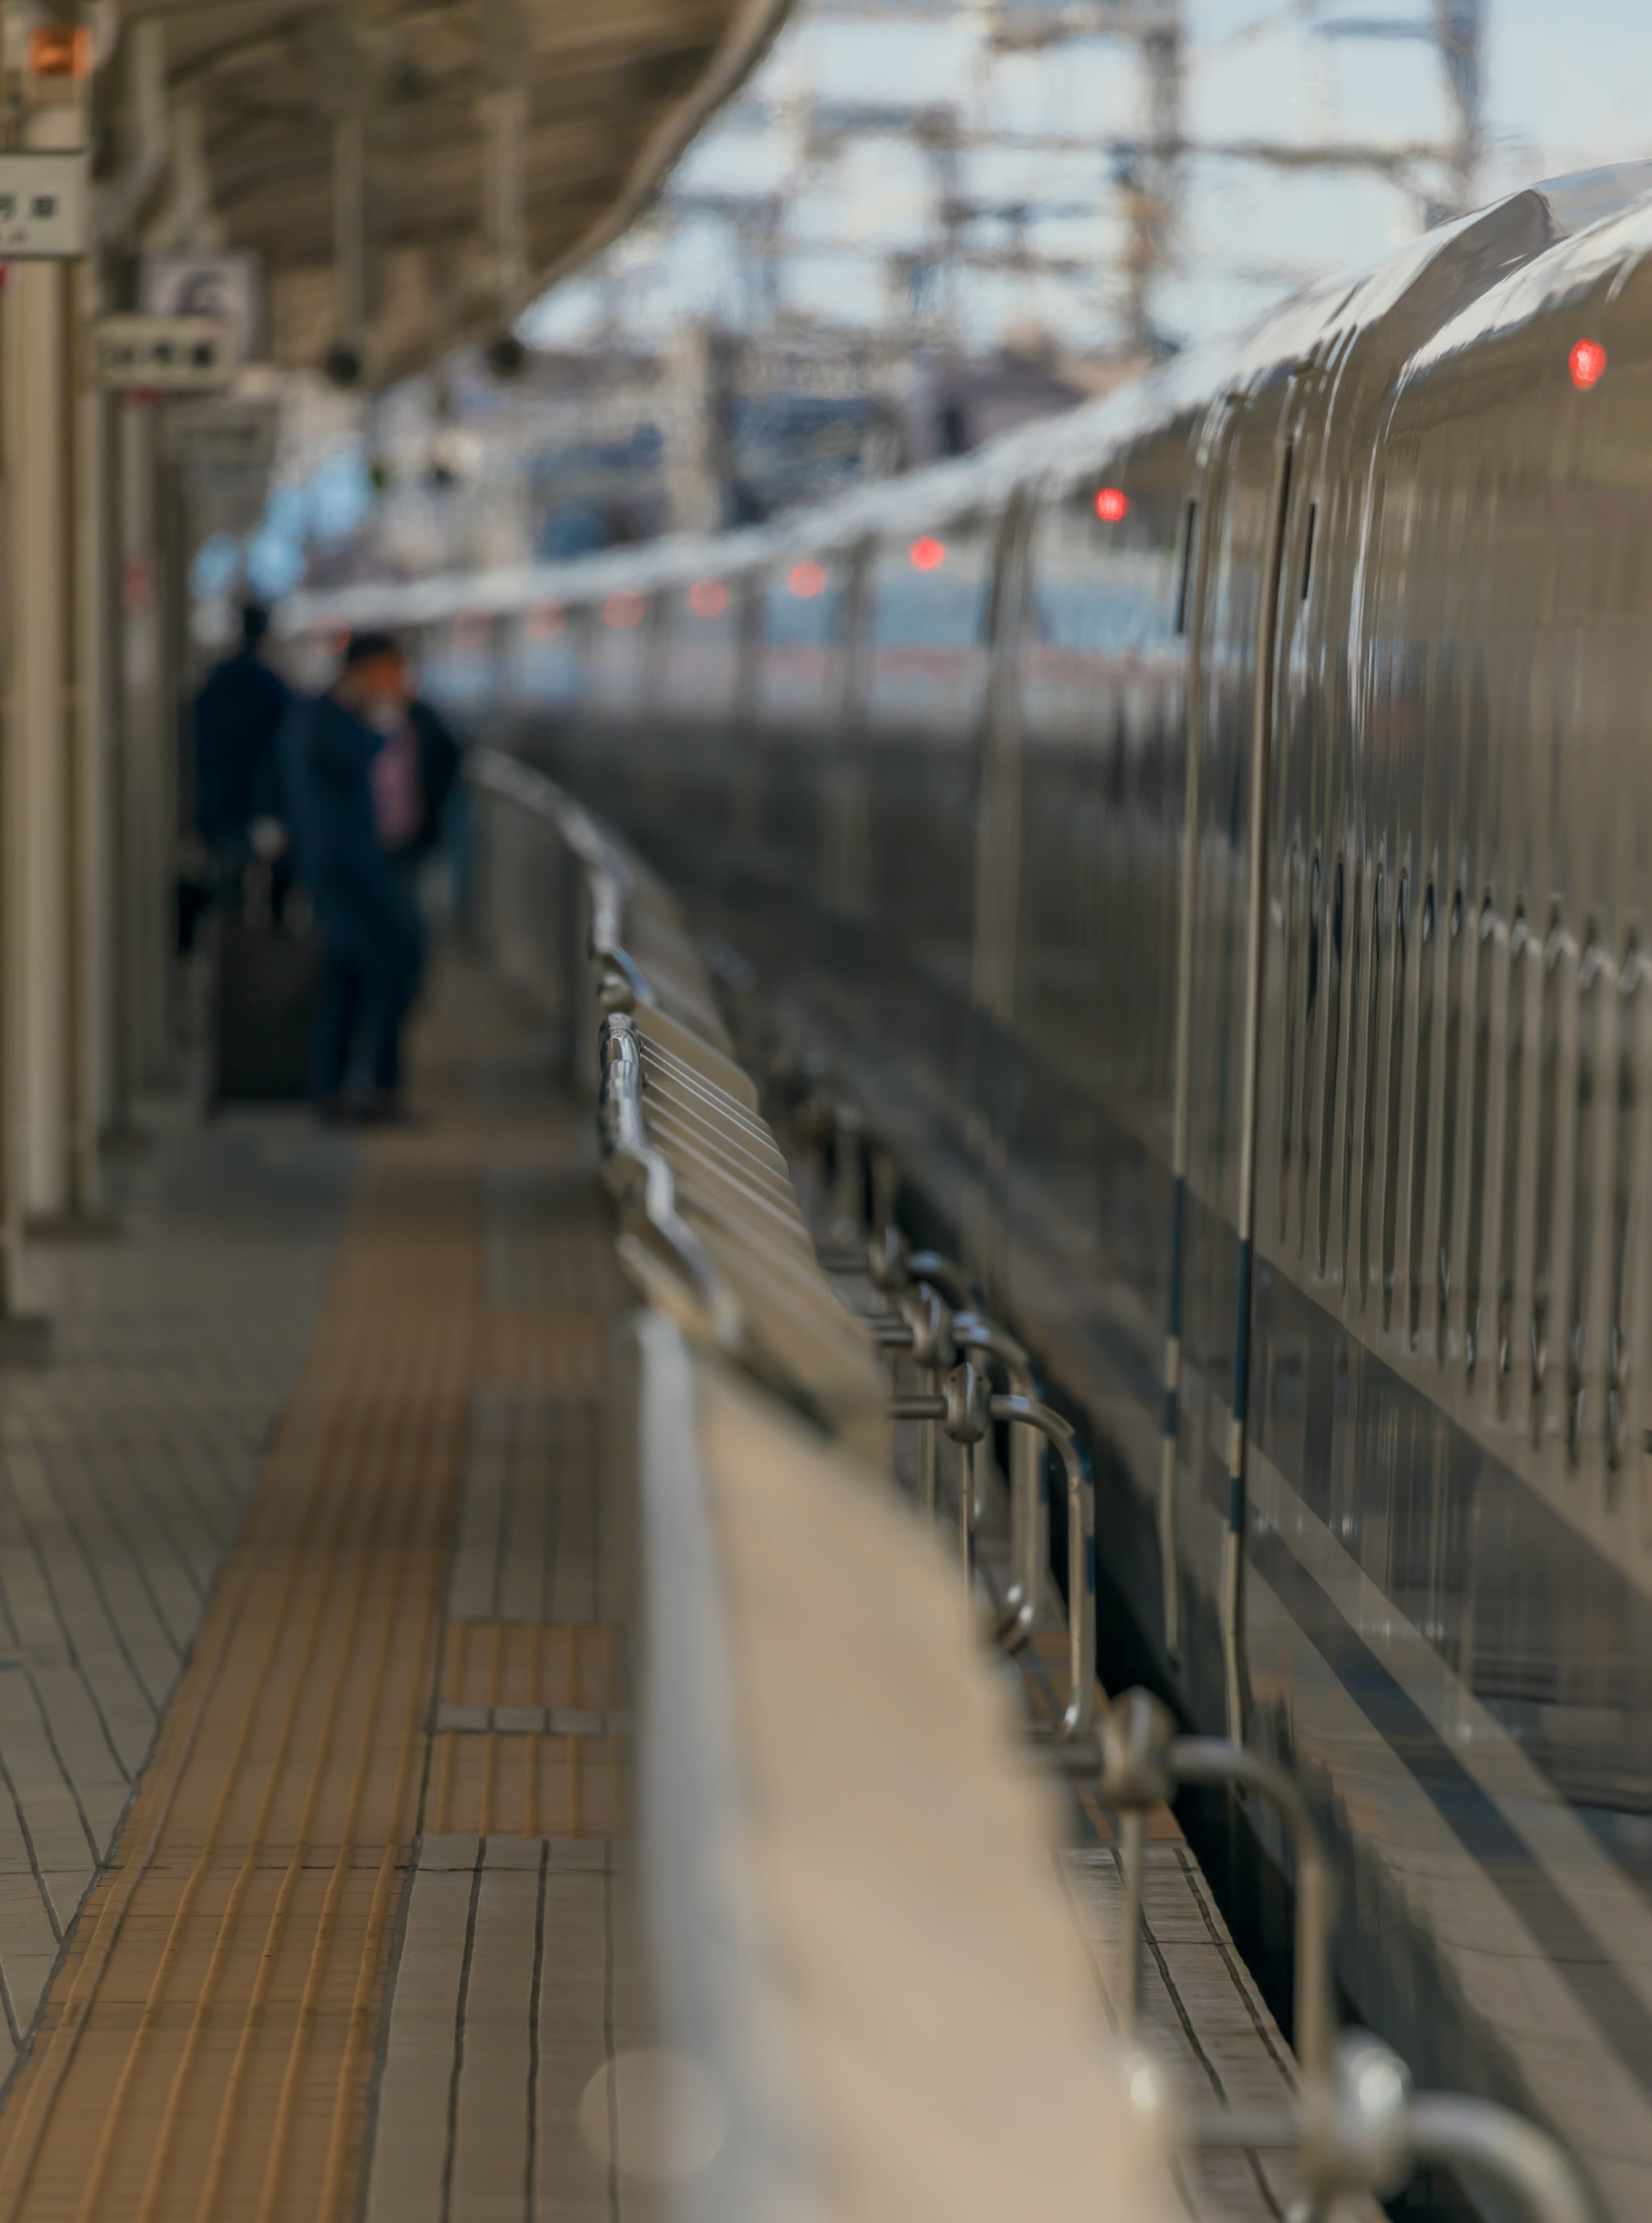 Mishima Station - Shinkansen